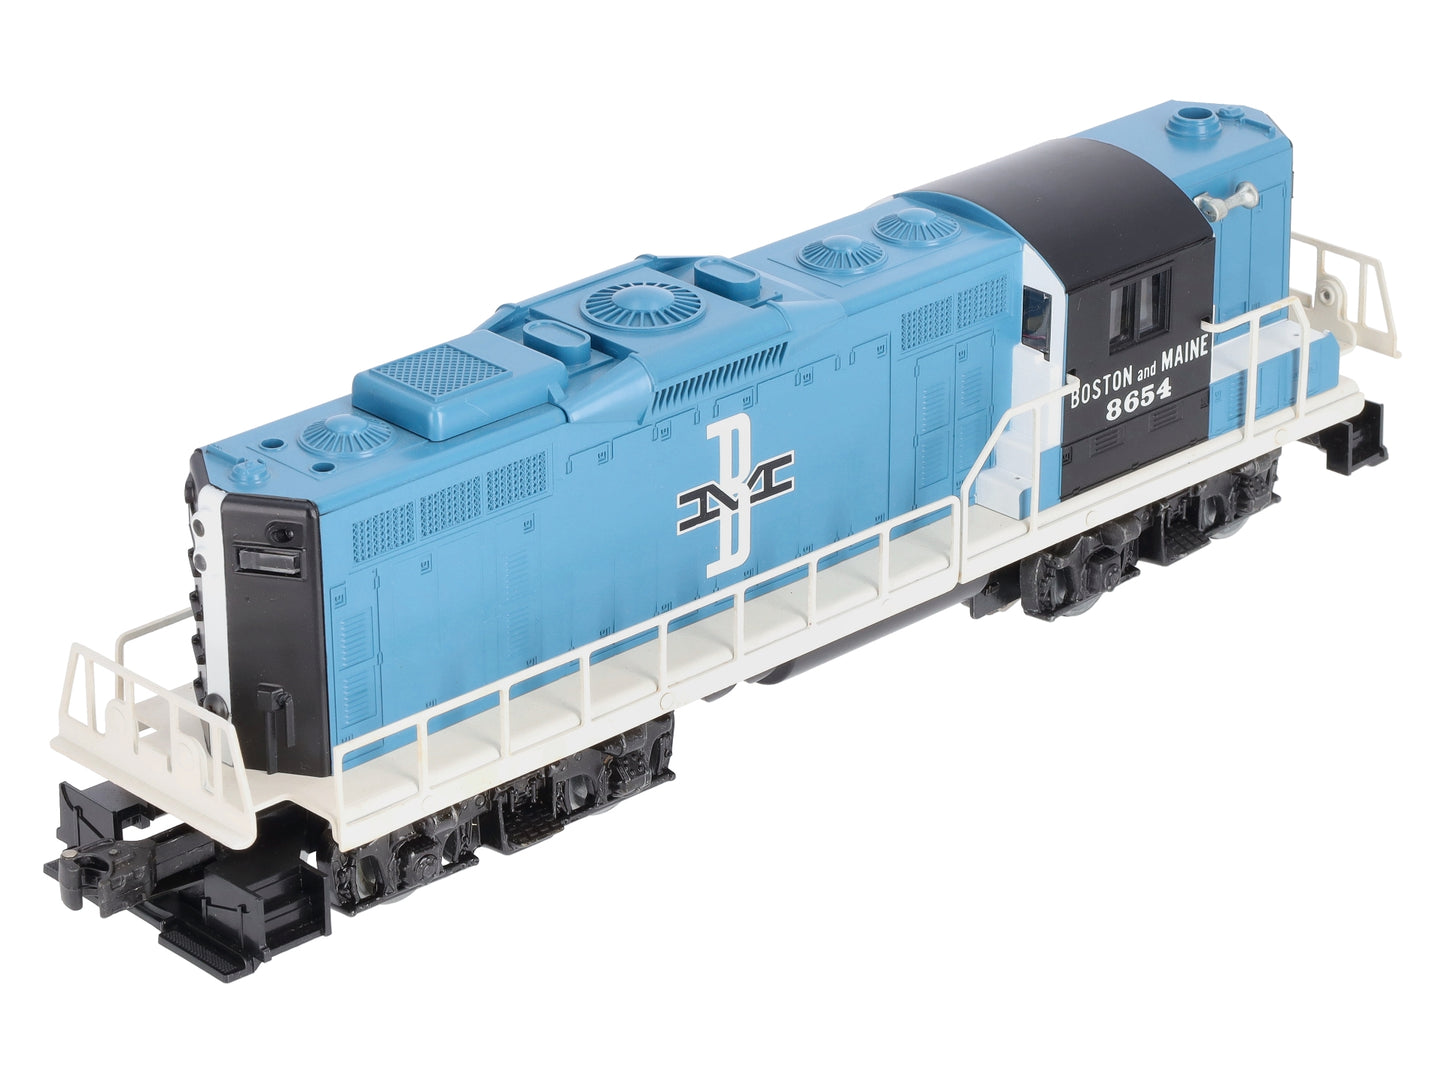 Lionel 6-8654 O Gauge Boston & Maine GP-9 Powered Diesel Locomotive #8654